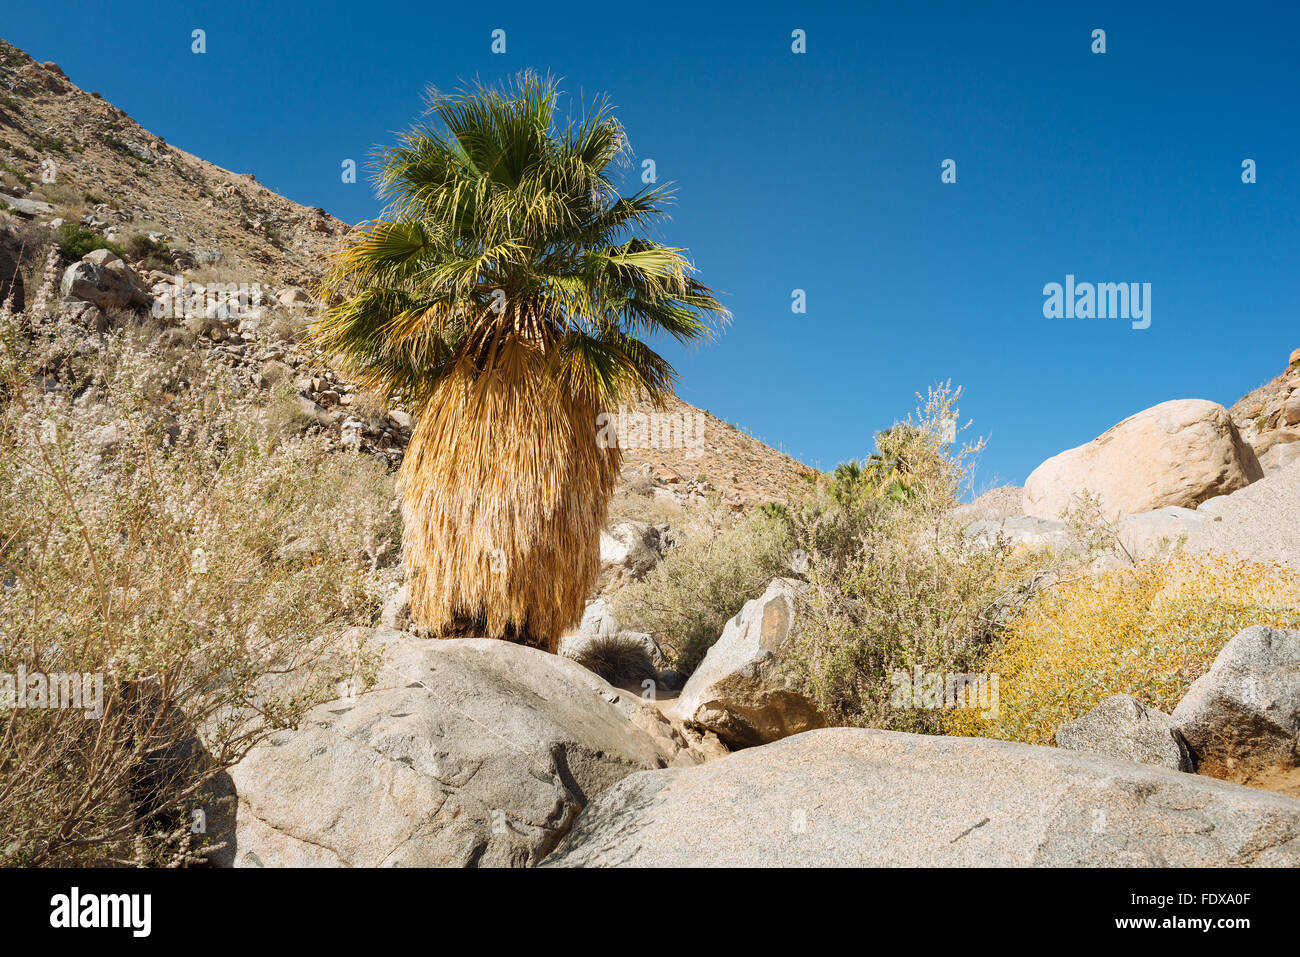 Un ventilateur de la californie Washingtonia filifera (palmier) dans la région de Canyon Hellhole, Anza-Borrego Desert State Park, Californie Banque D'Images